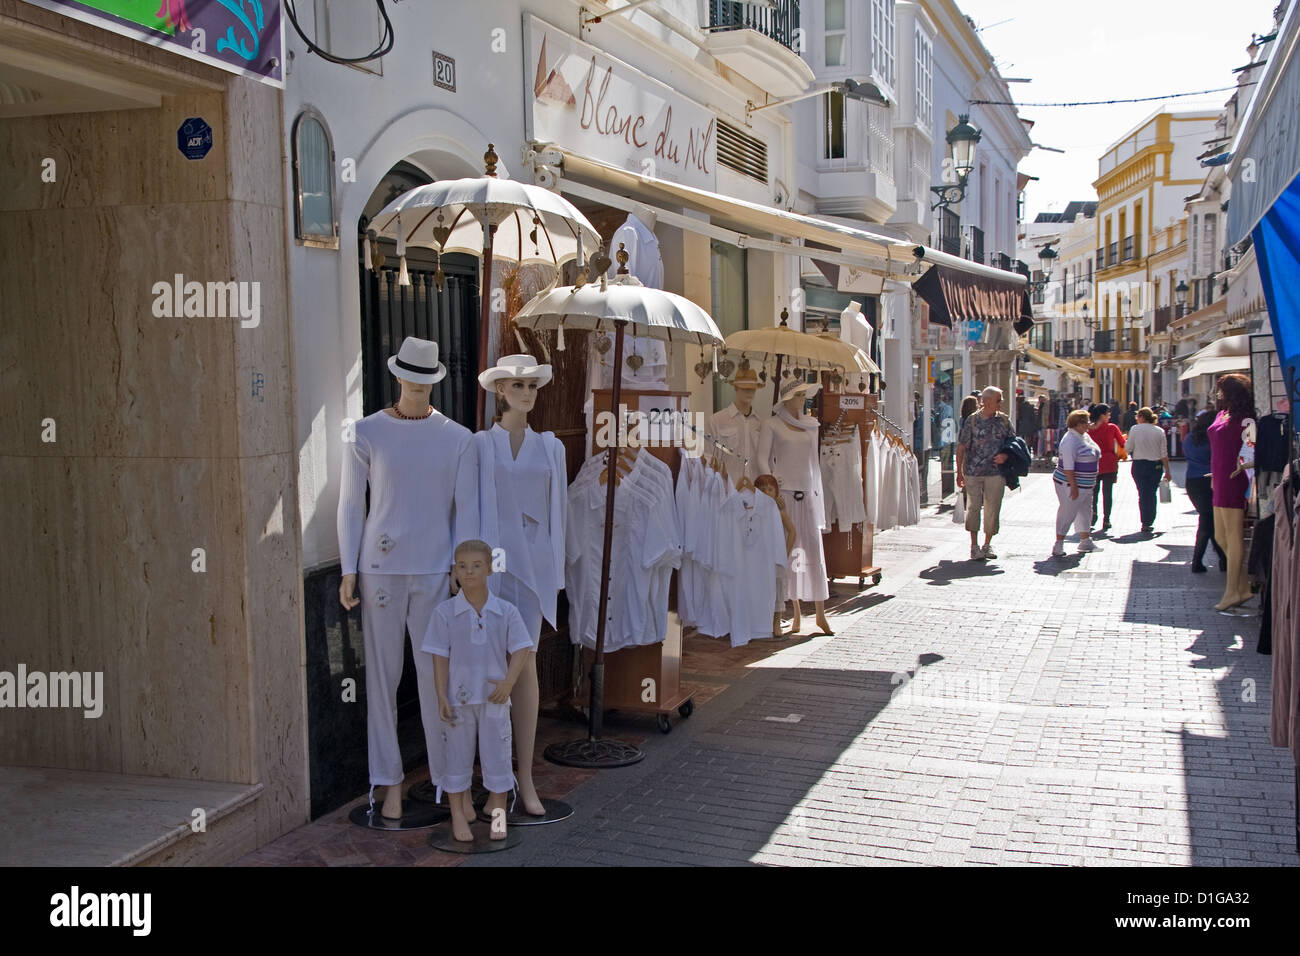 Blanc de Nile clothes shop, Nerja, Spain Stock Photo